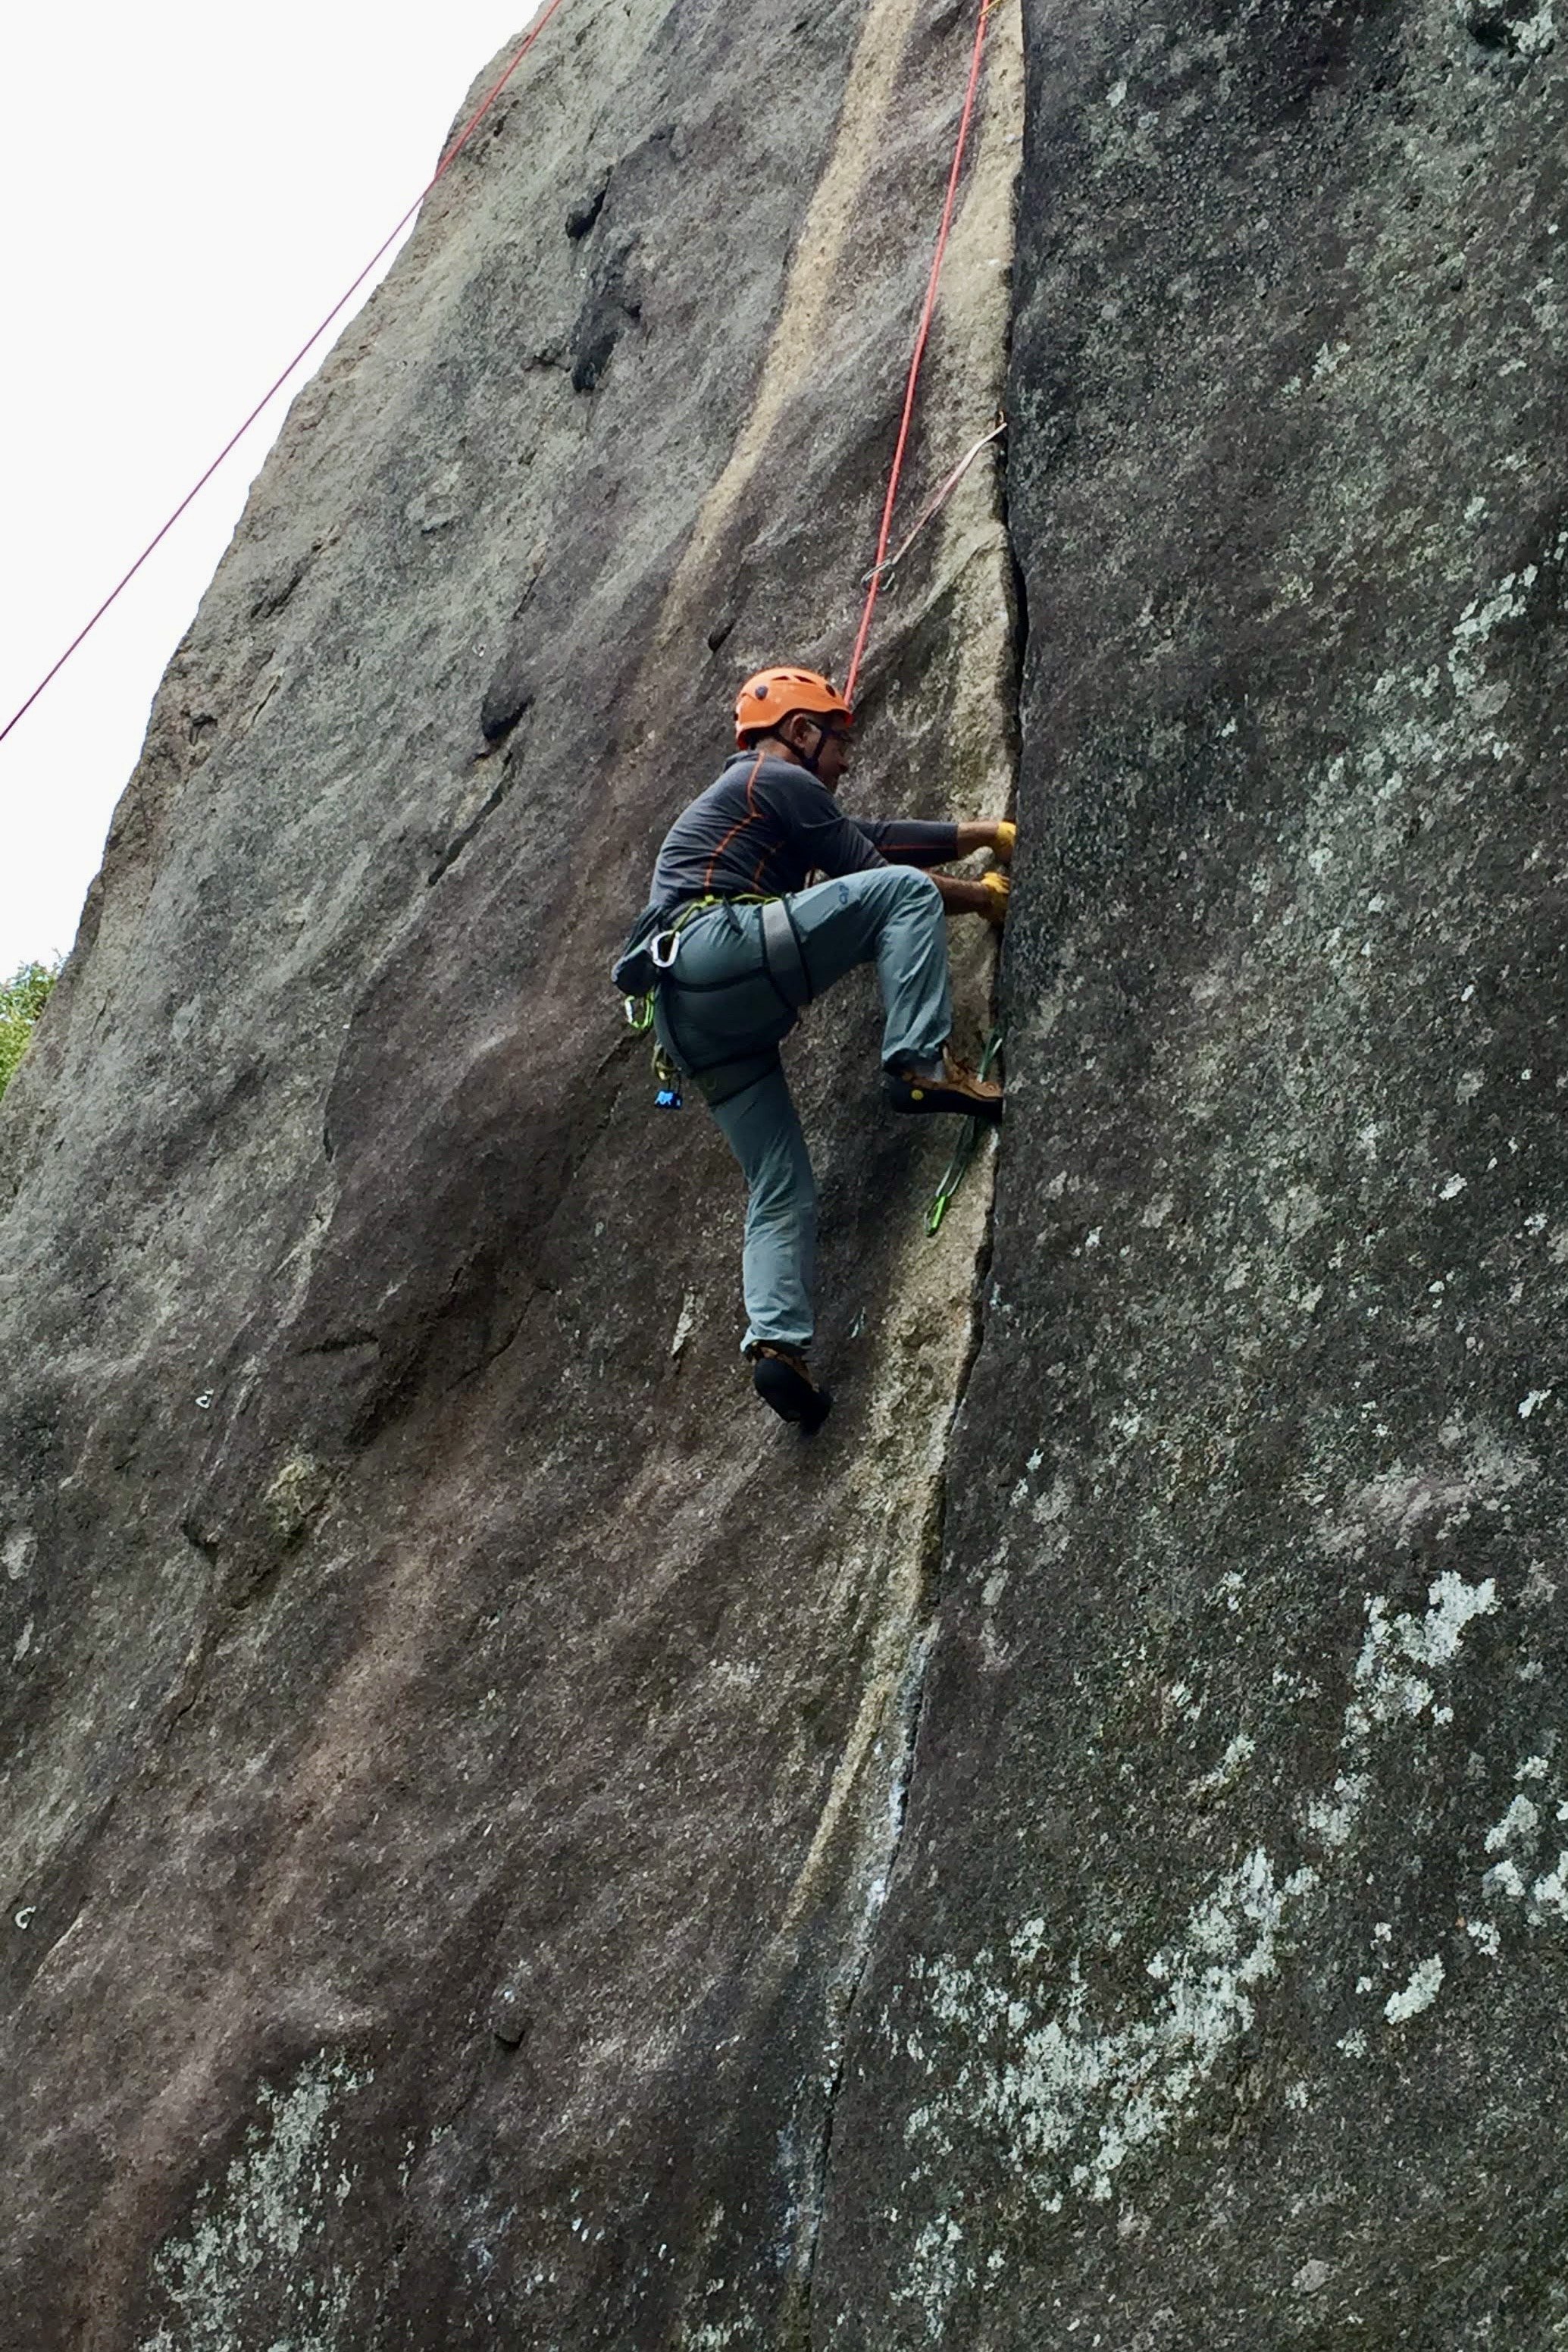 Crack climbing clinic, Rockfest, Montagne d’Argent, Sept 2018.